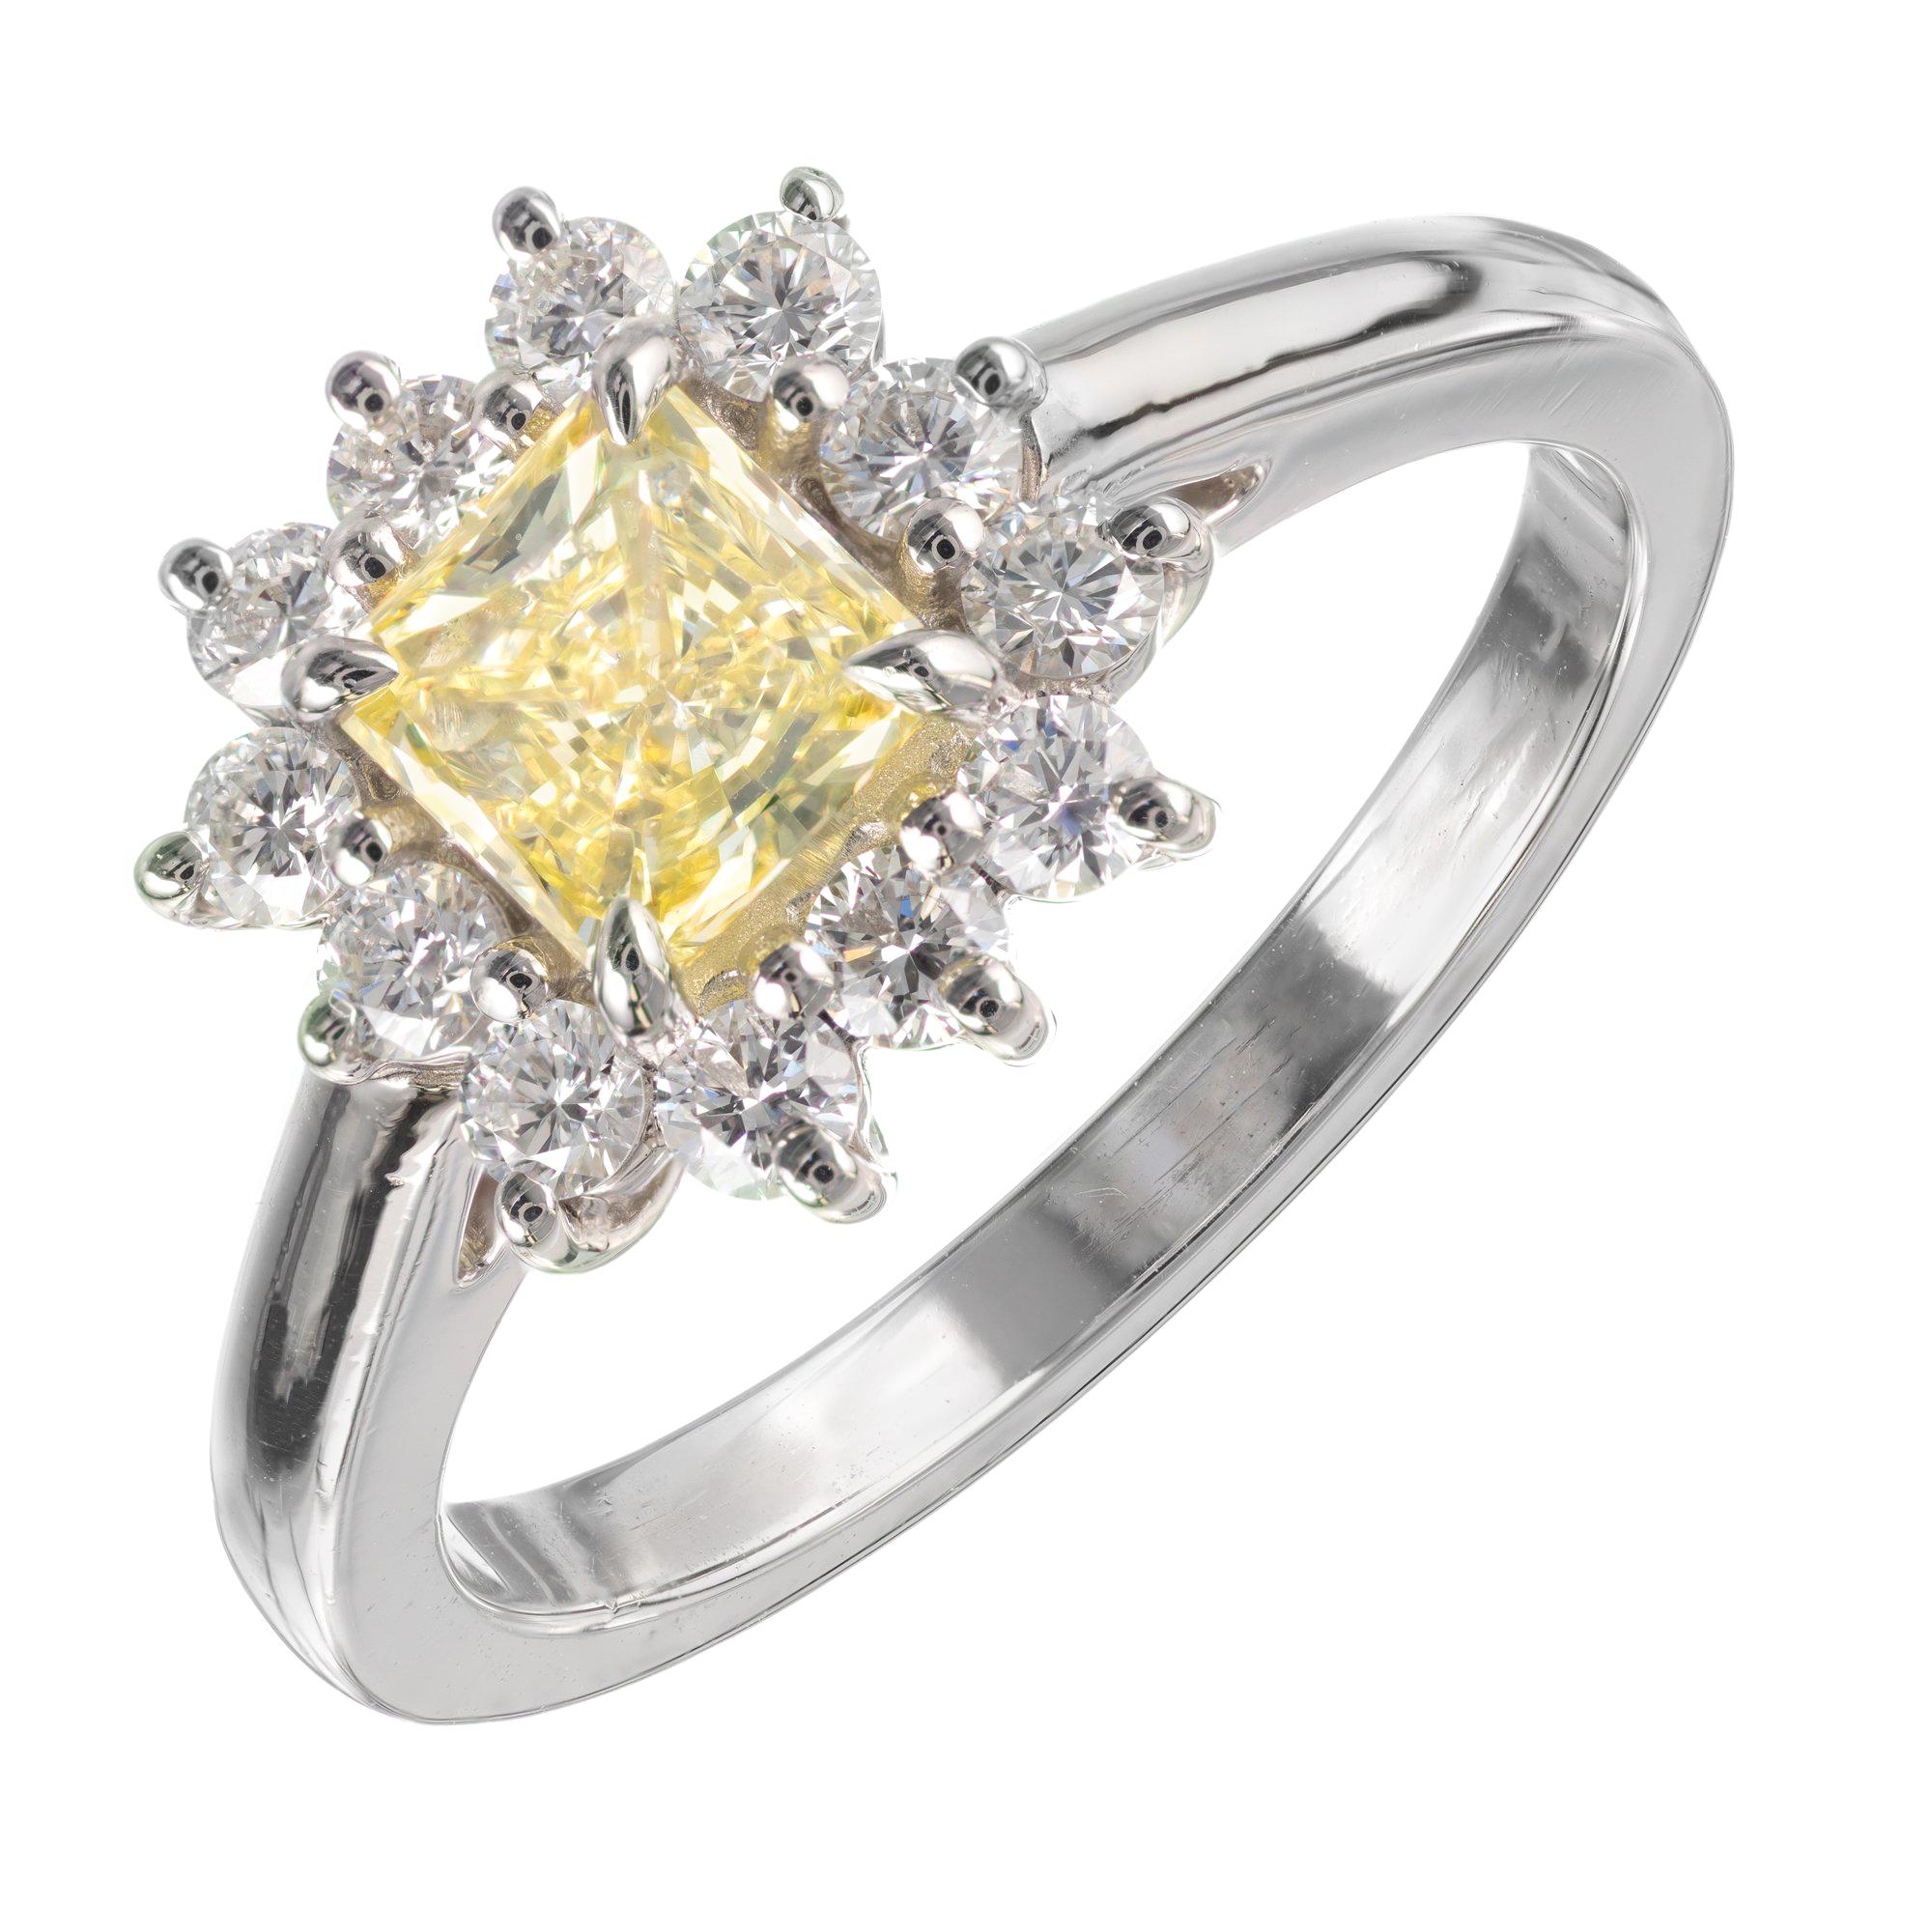 Verlobungsring, GIA-zertifizierter 1,55 Karat gelber Diamant in Platin von Peter Suchy